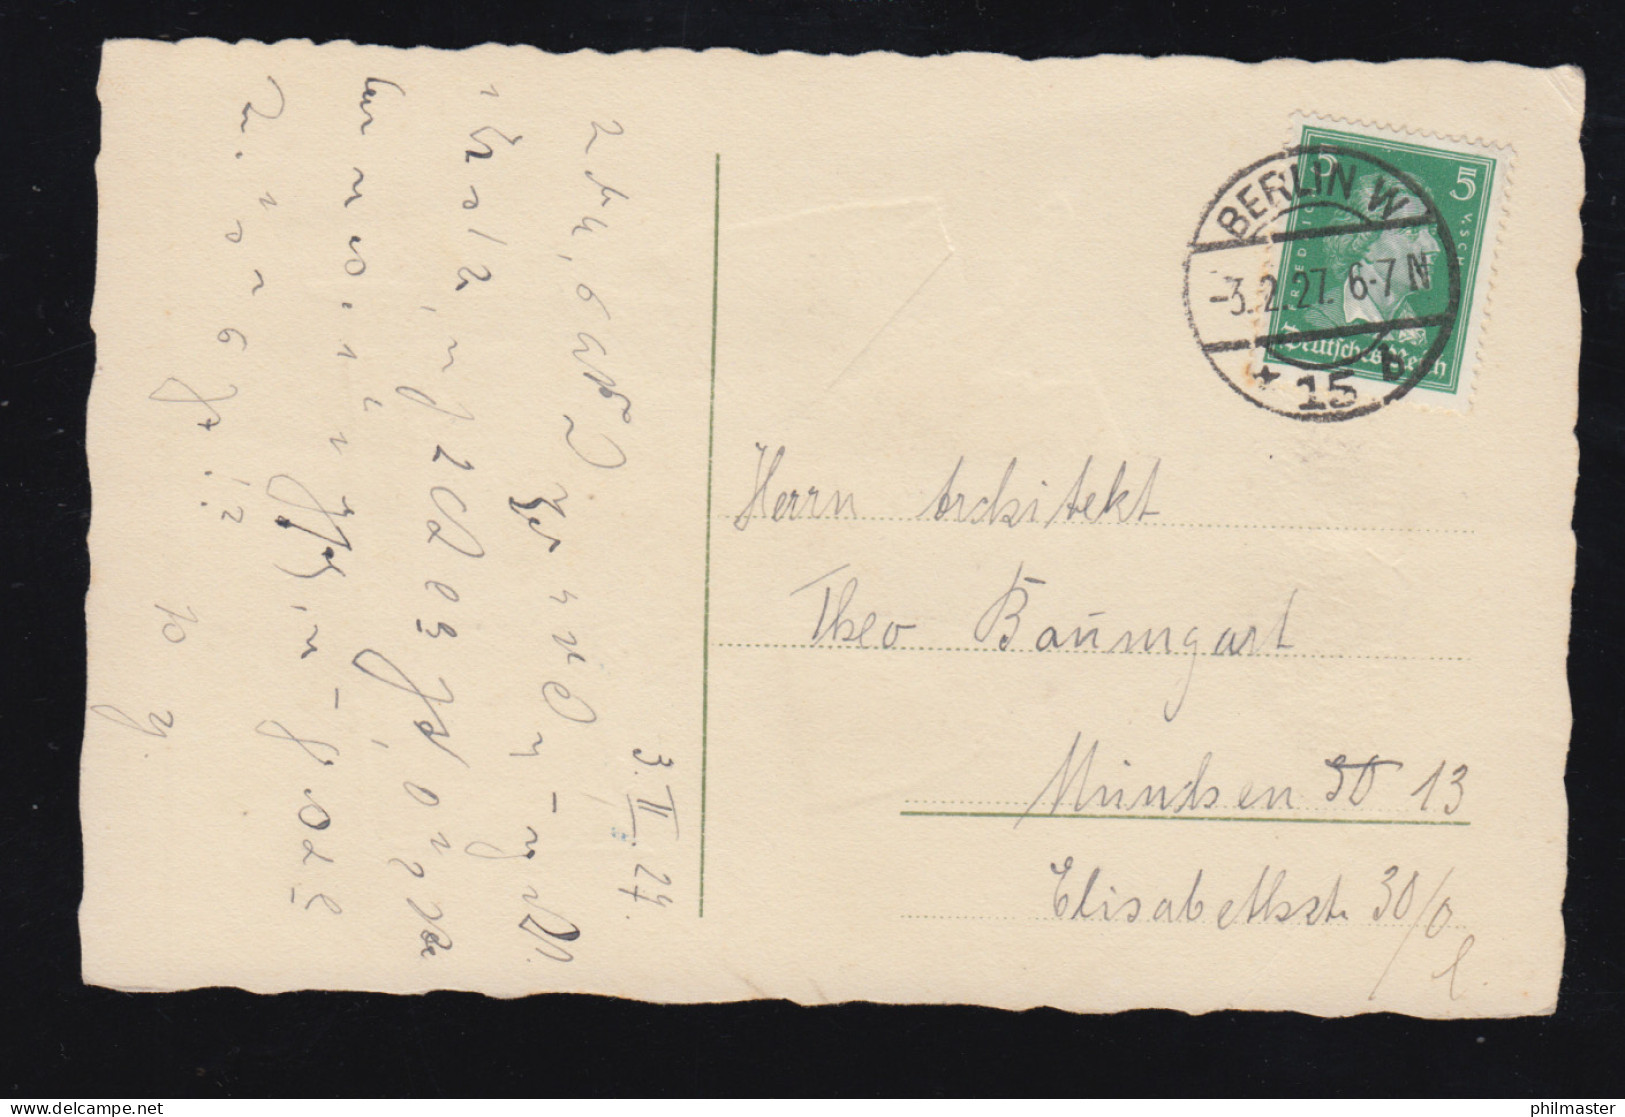 Tiere-AK Hund Bringt Brief Zum Briefkasten, BERLIN W 15b 3.2.1927 - Hunde